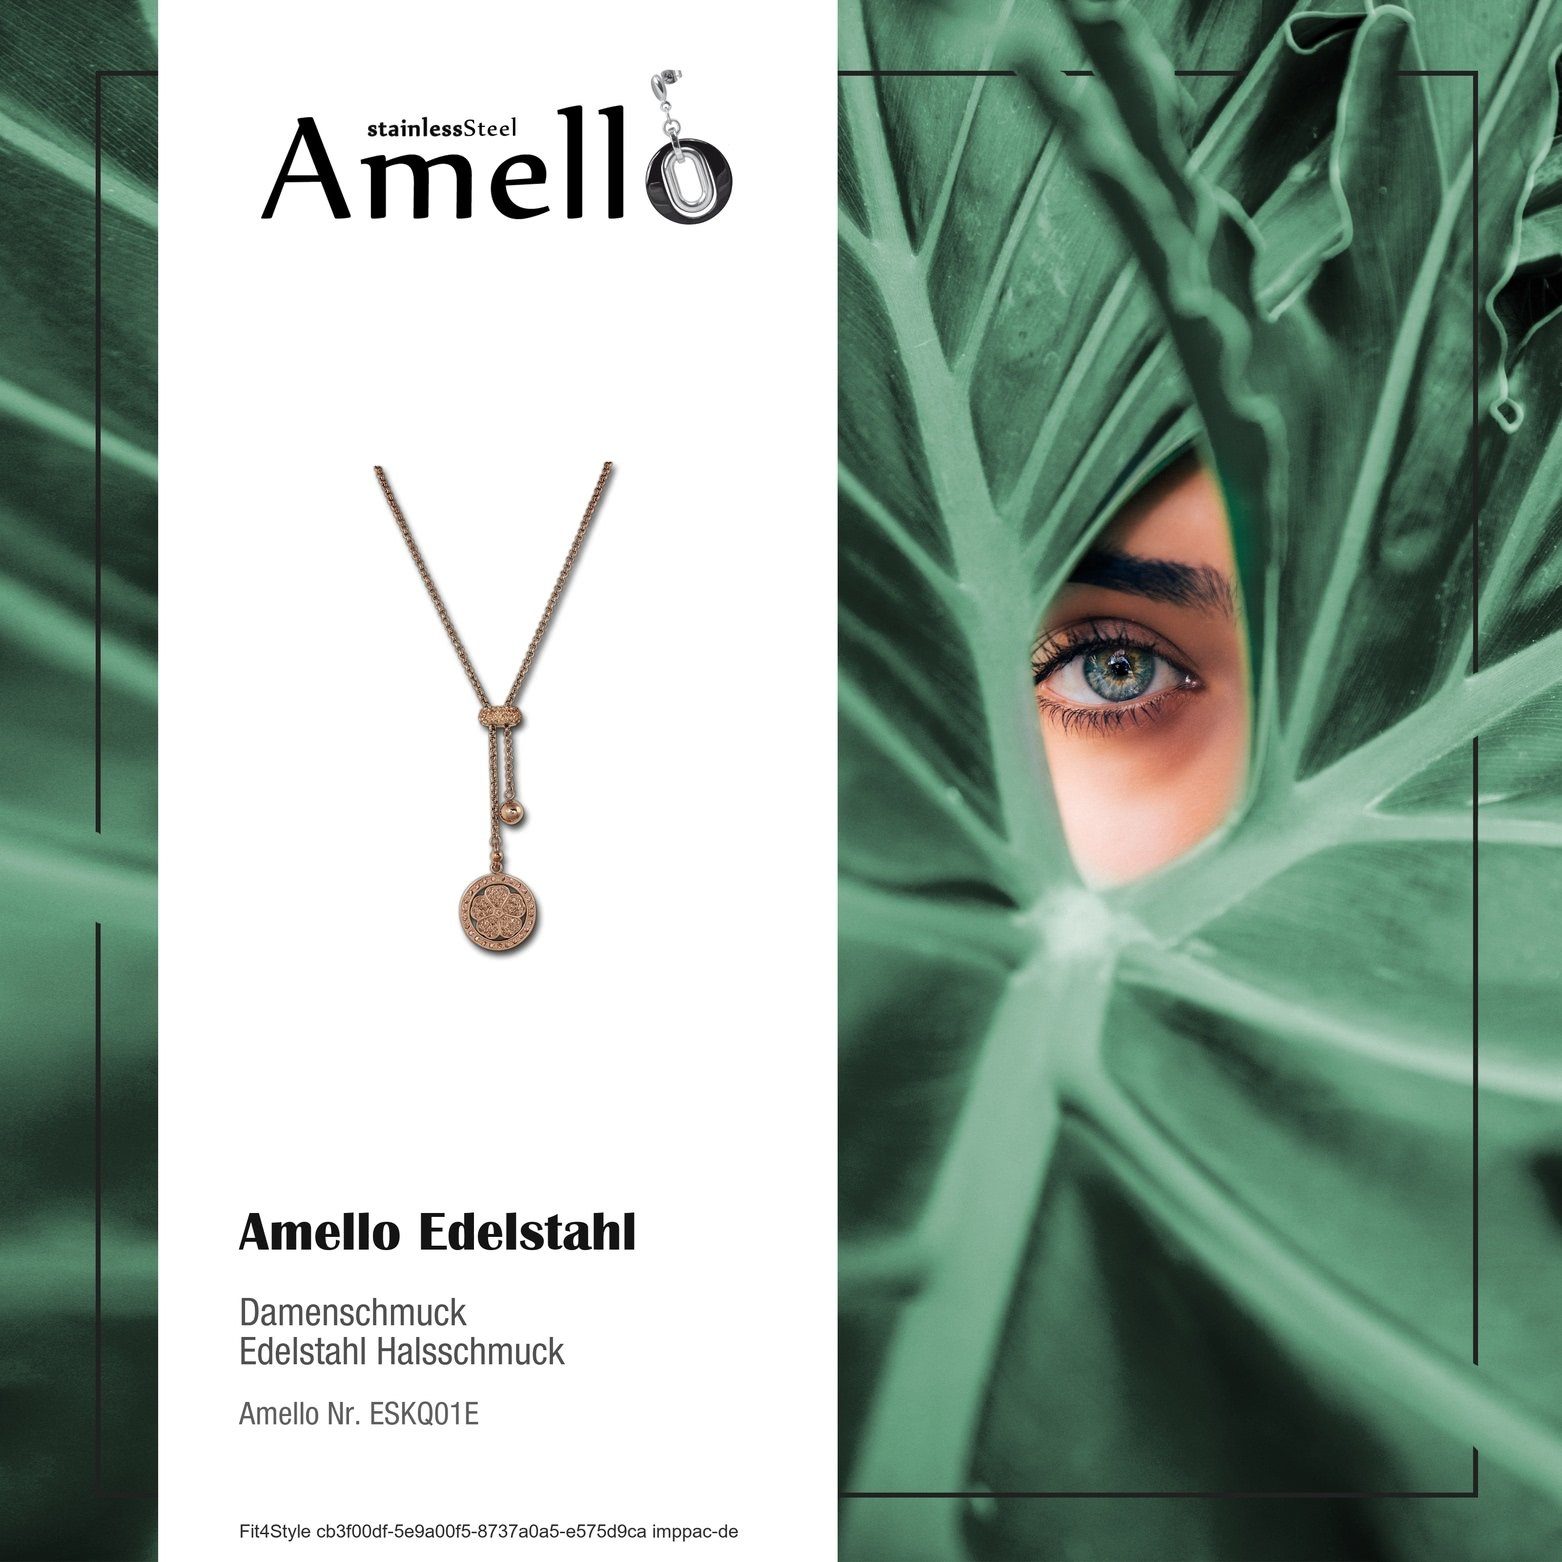 Halsketten Edelstahlkette Kette Amello Amello vergolde (Kleeblatt) 80cm, Steel), (Stainless (Halskette), Edelstahl ca. Damen Kleeblatt rose